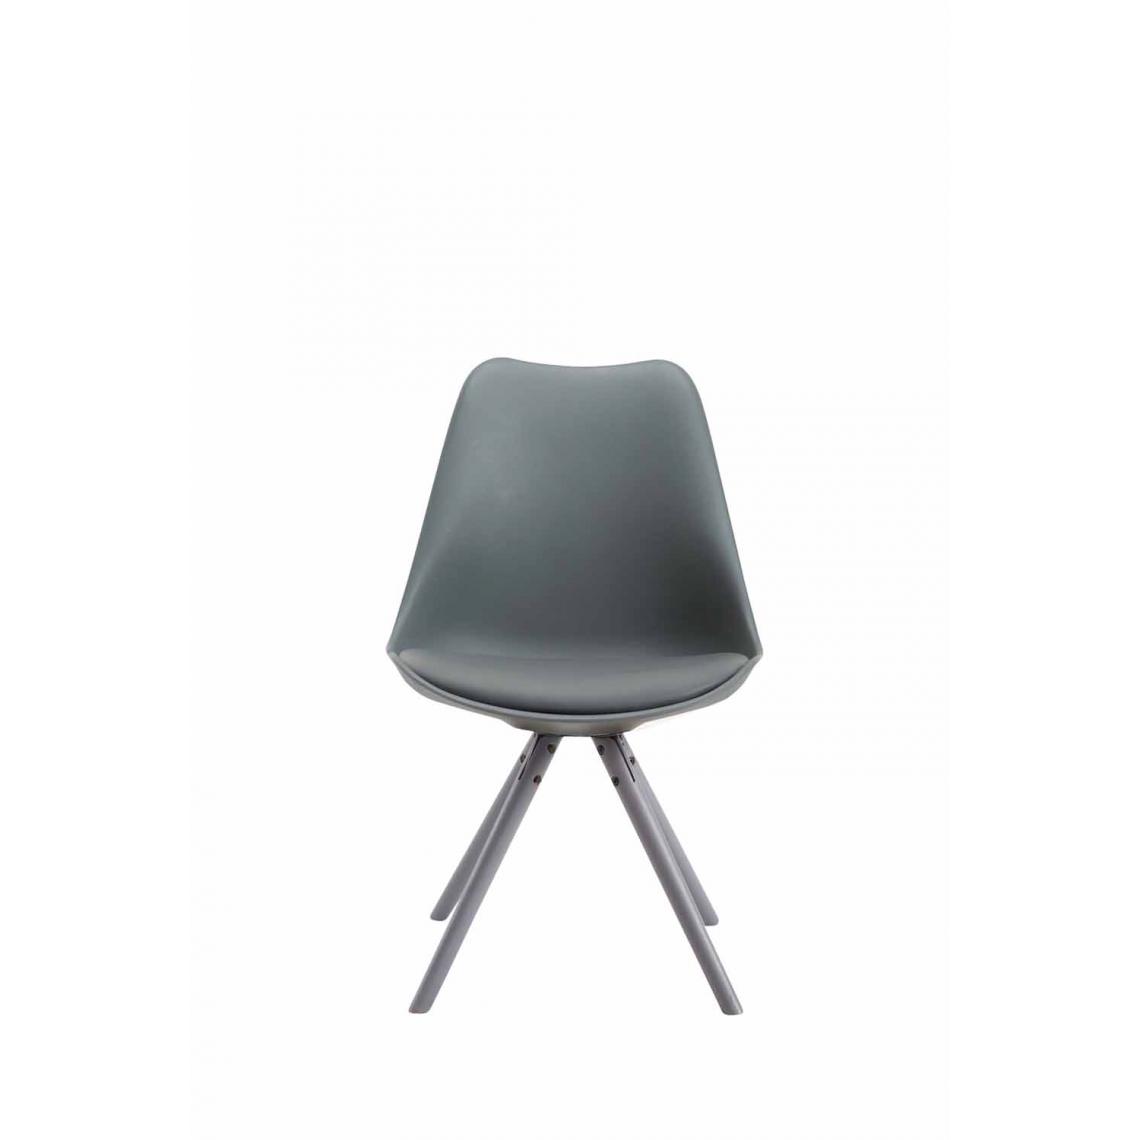 Icaverne - Magnifique Chaise visiteur gamme Katmandou cuir synthétique rond gris couleur gris - Chaises